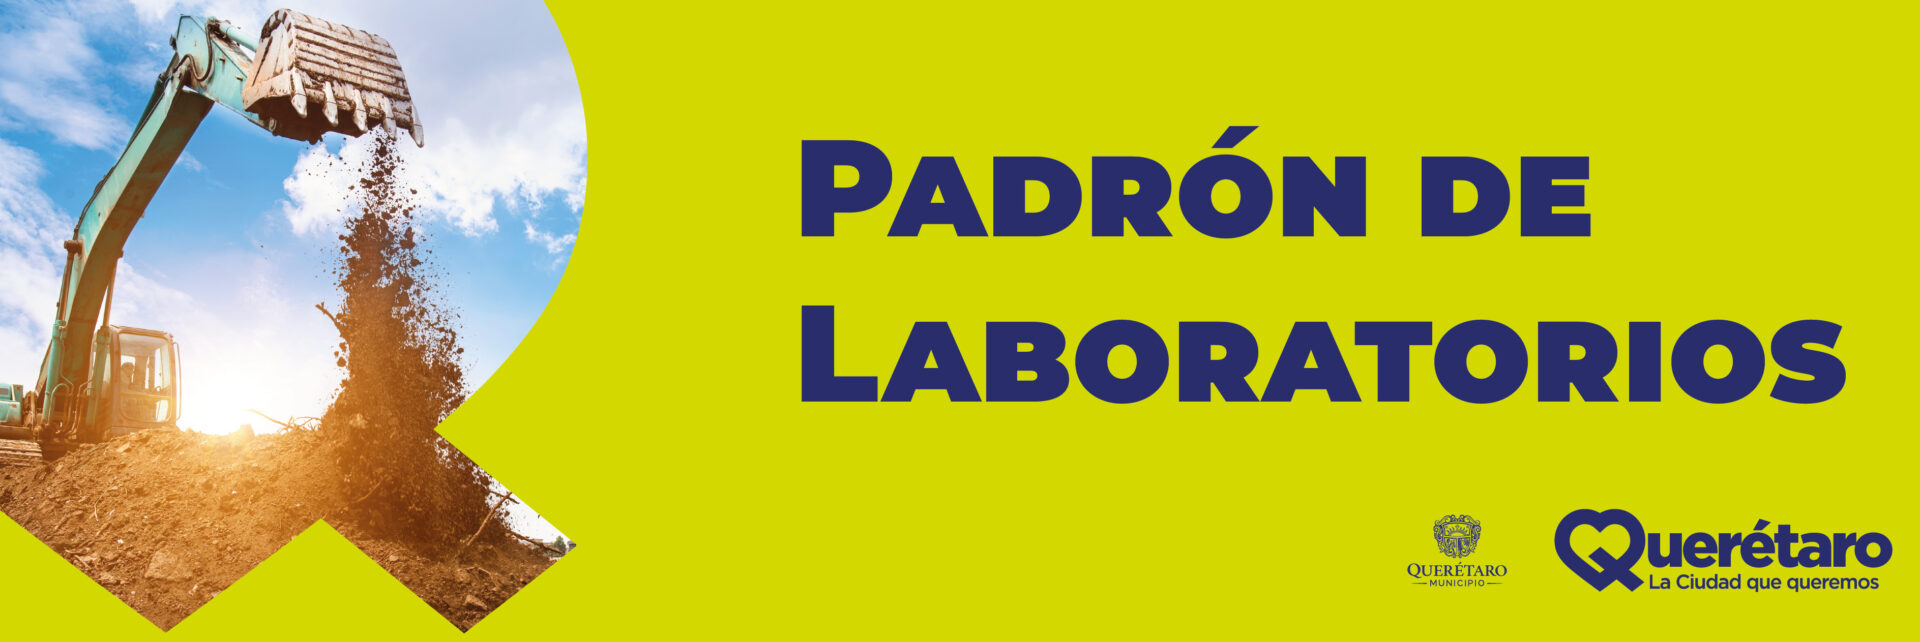 Banner Padrón de laboratorios